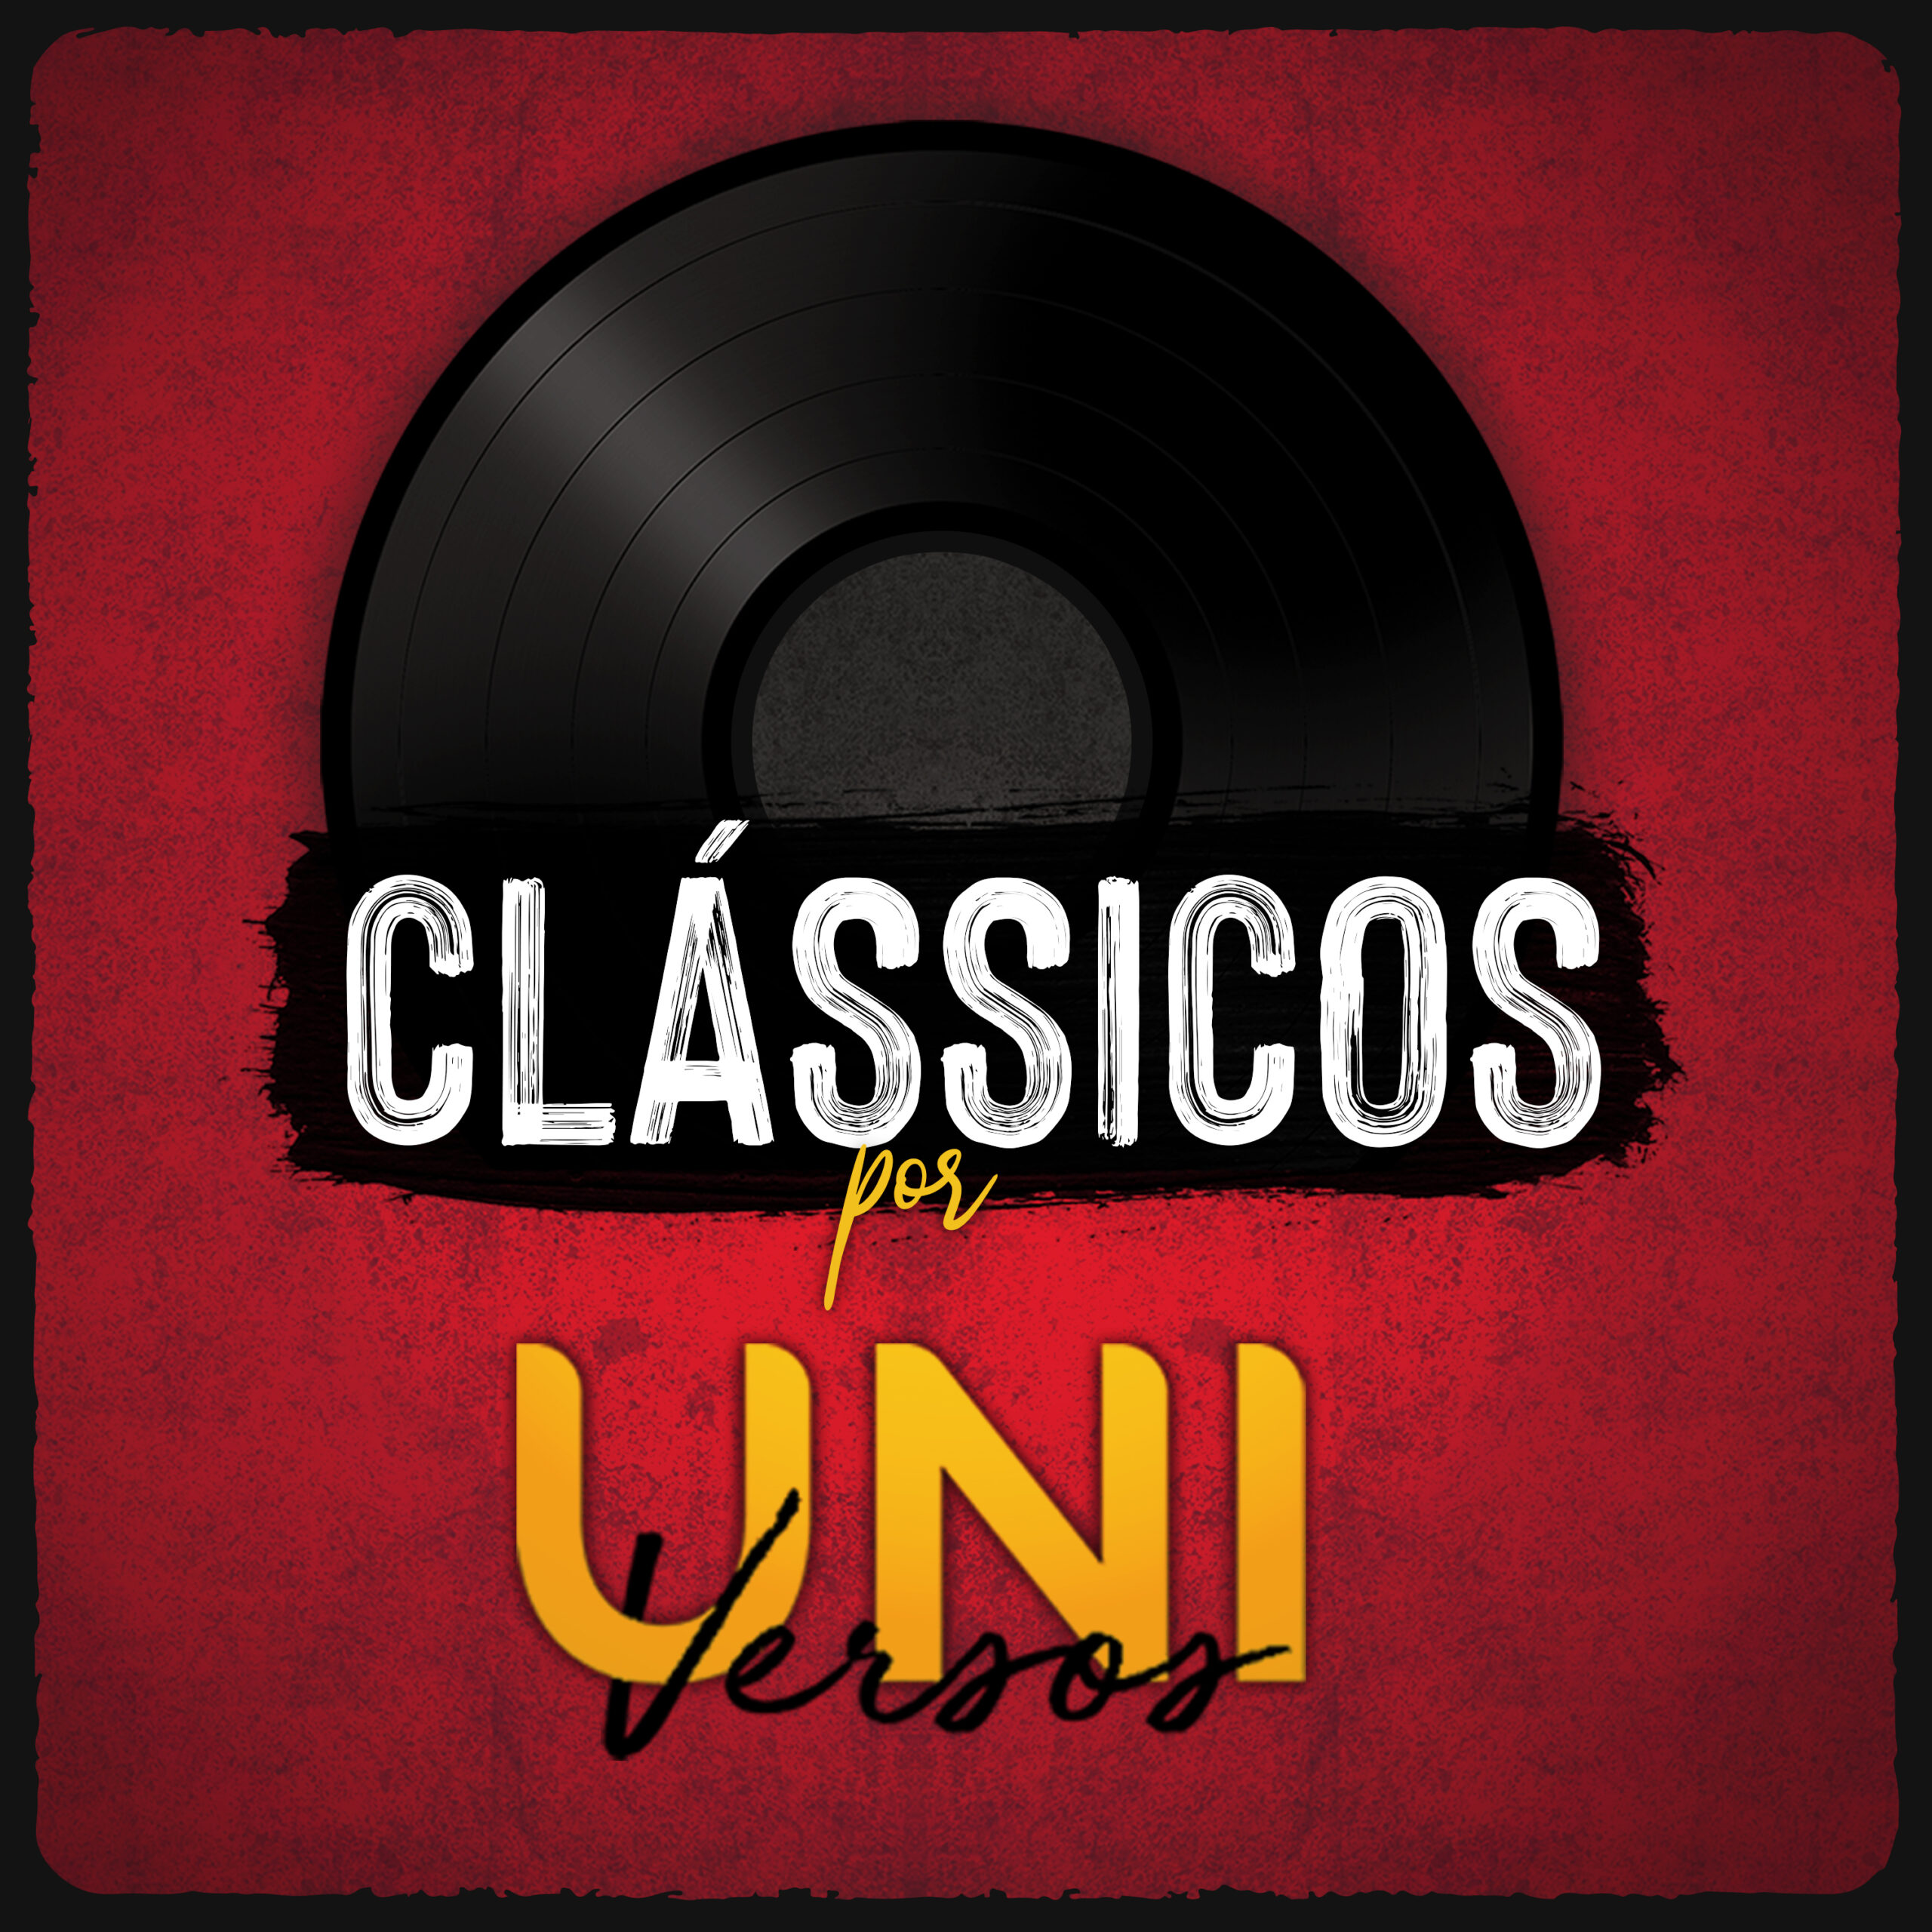 Banda Universos lança novo álbum “Clássicos por Banda Universos”